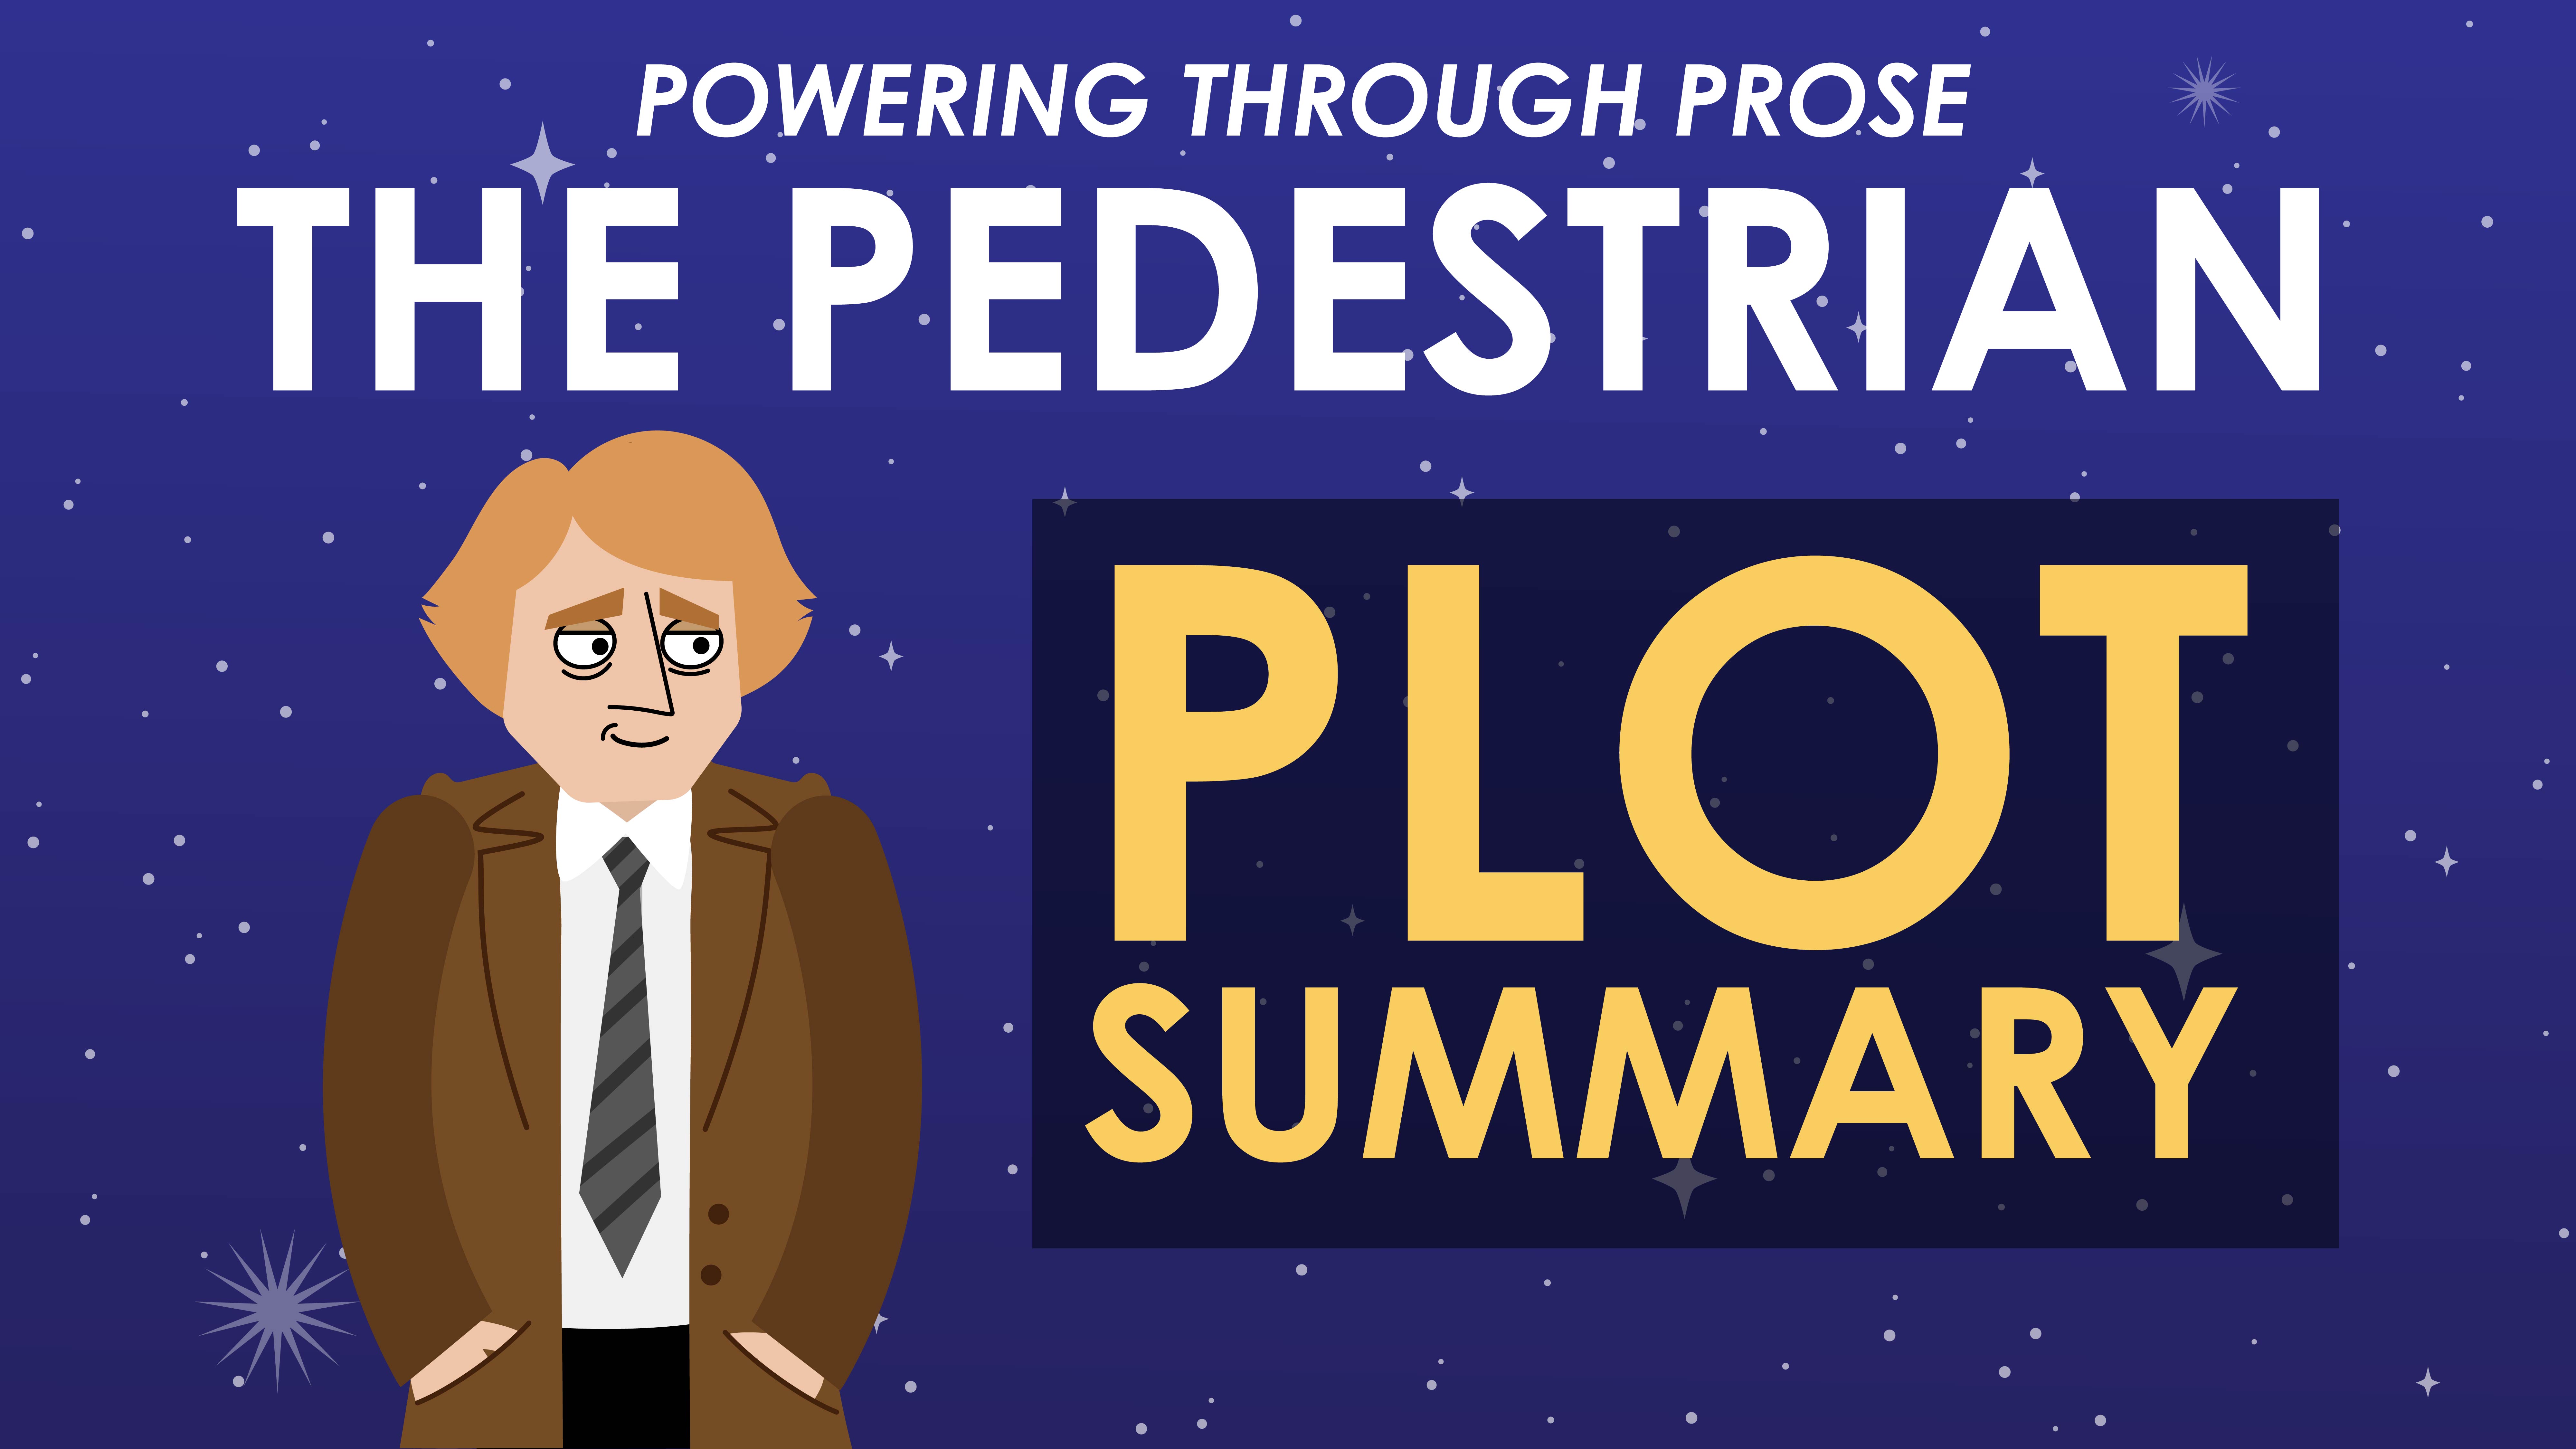 The Pedestrian - Ray Bradbury - Plot Summary - Powering Through Prose Series